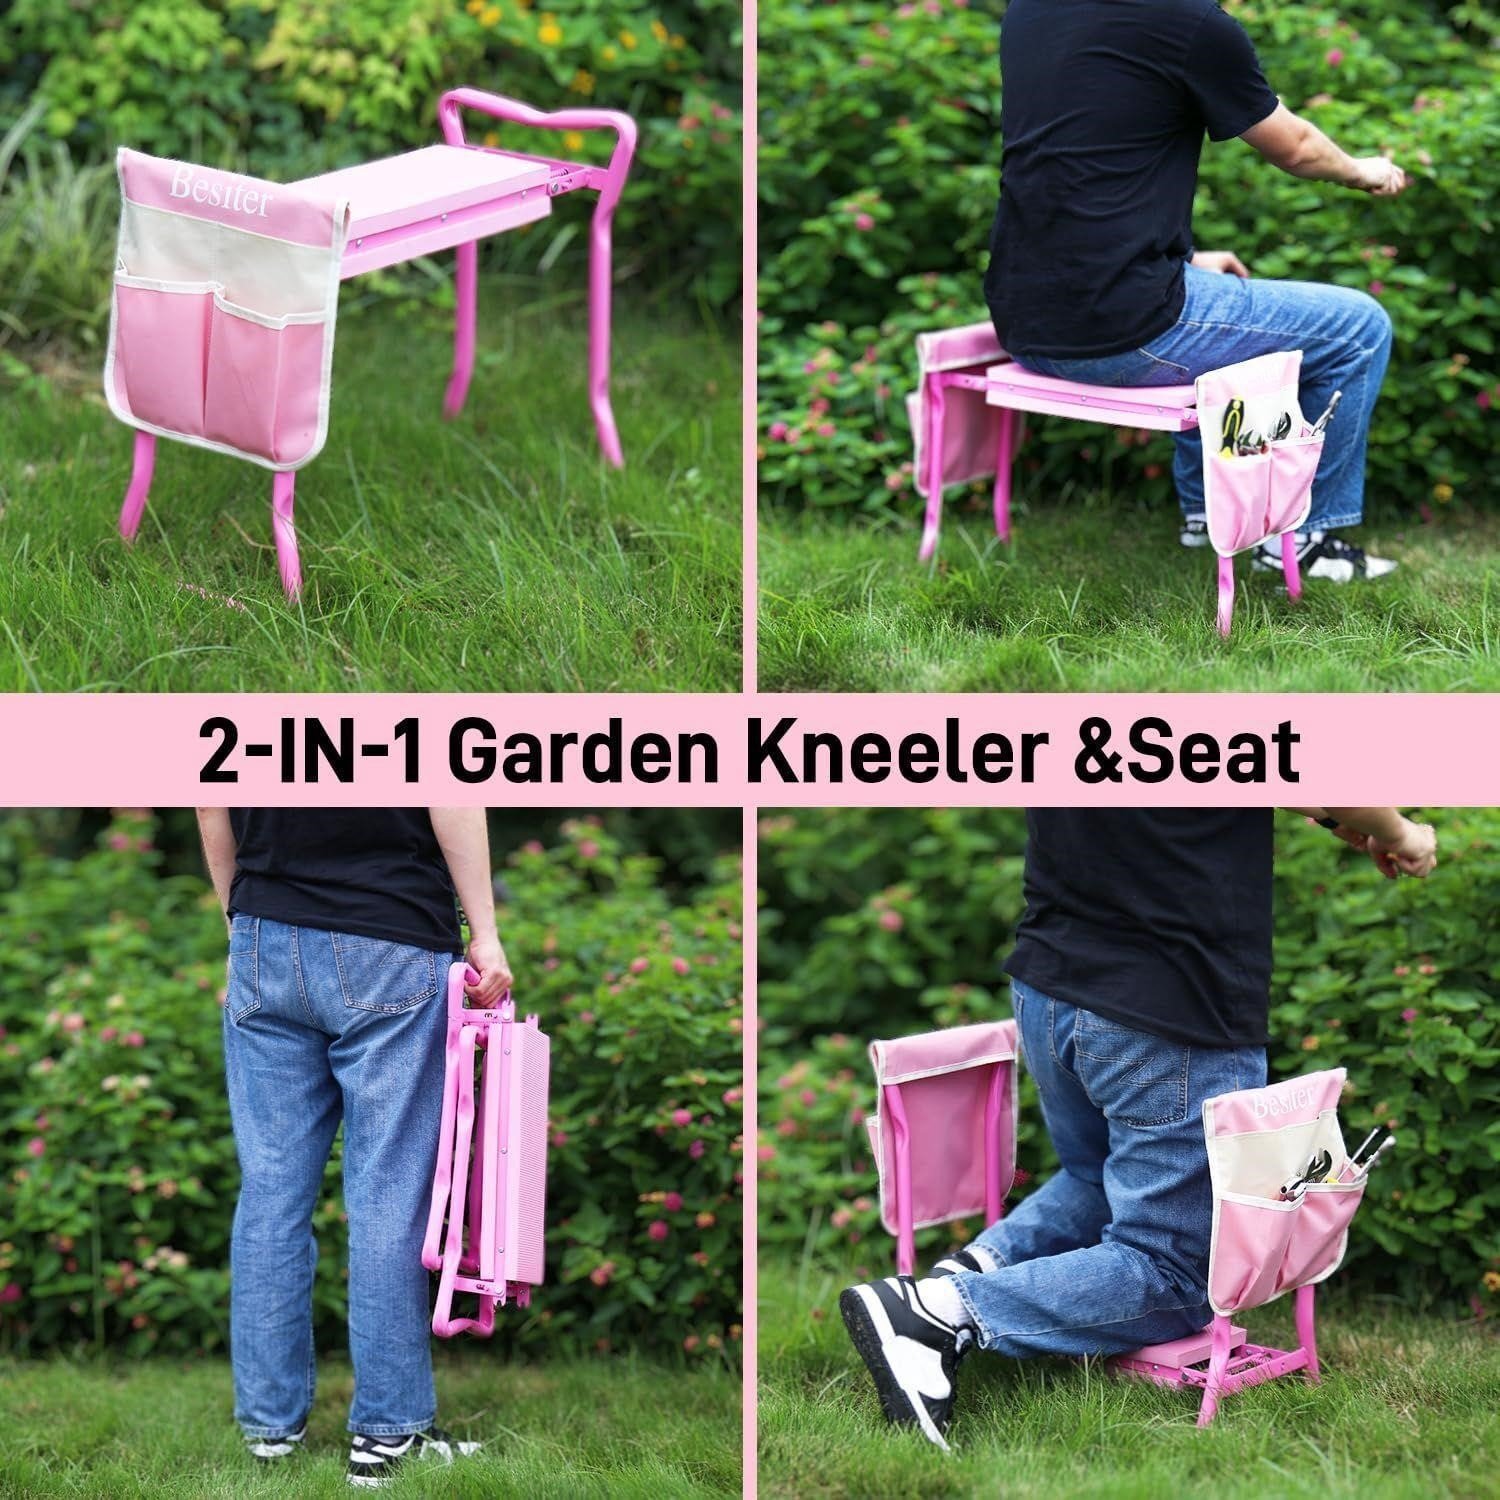 --Besiter Garden Kneeler and Seat PINK